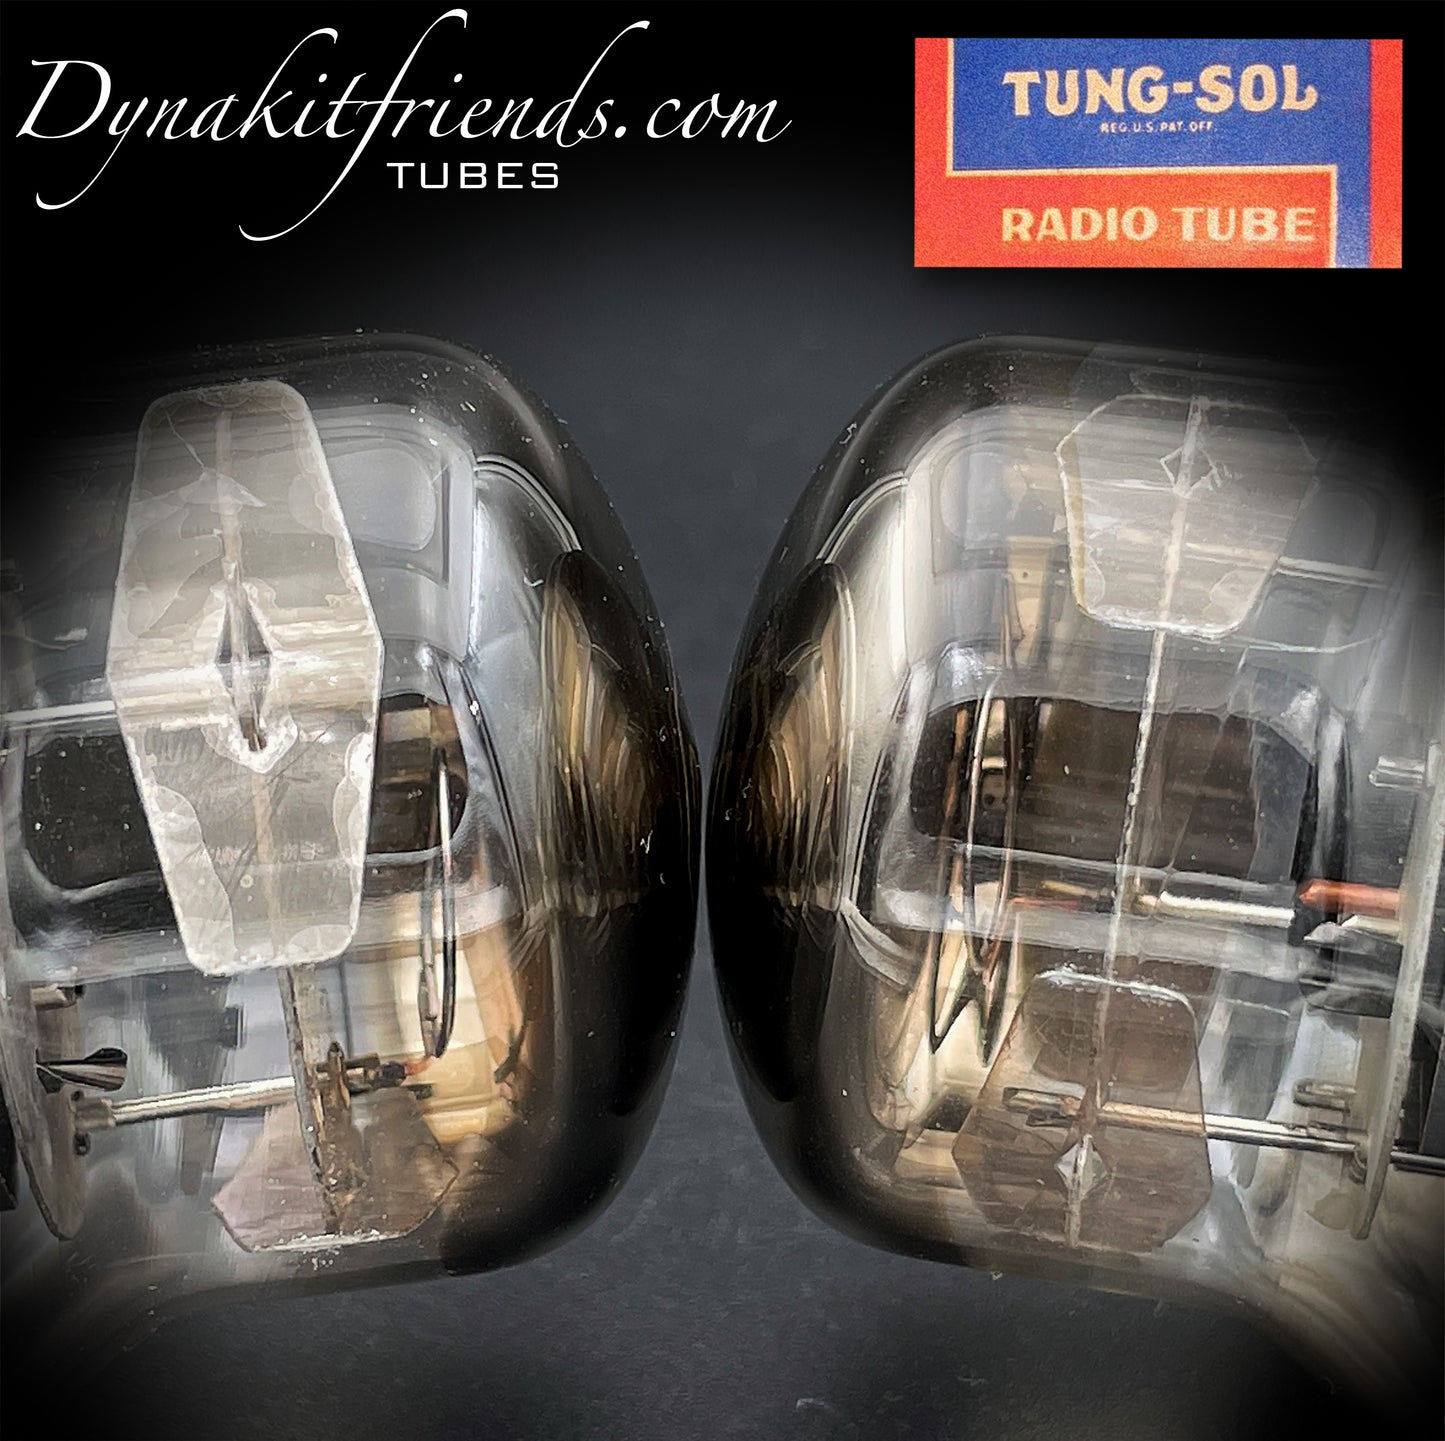 6550 TUNG-SOL Vintage Typ 2 – 3. Generation, graue Platten, dreifacher Halo-Getter, keine Löcher, passende Röhren, hergestellt in den USA